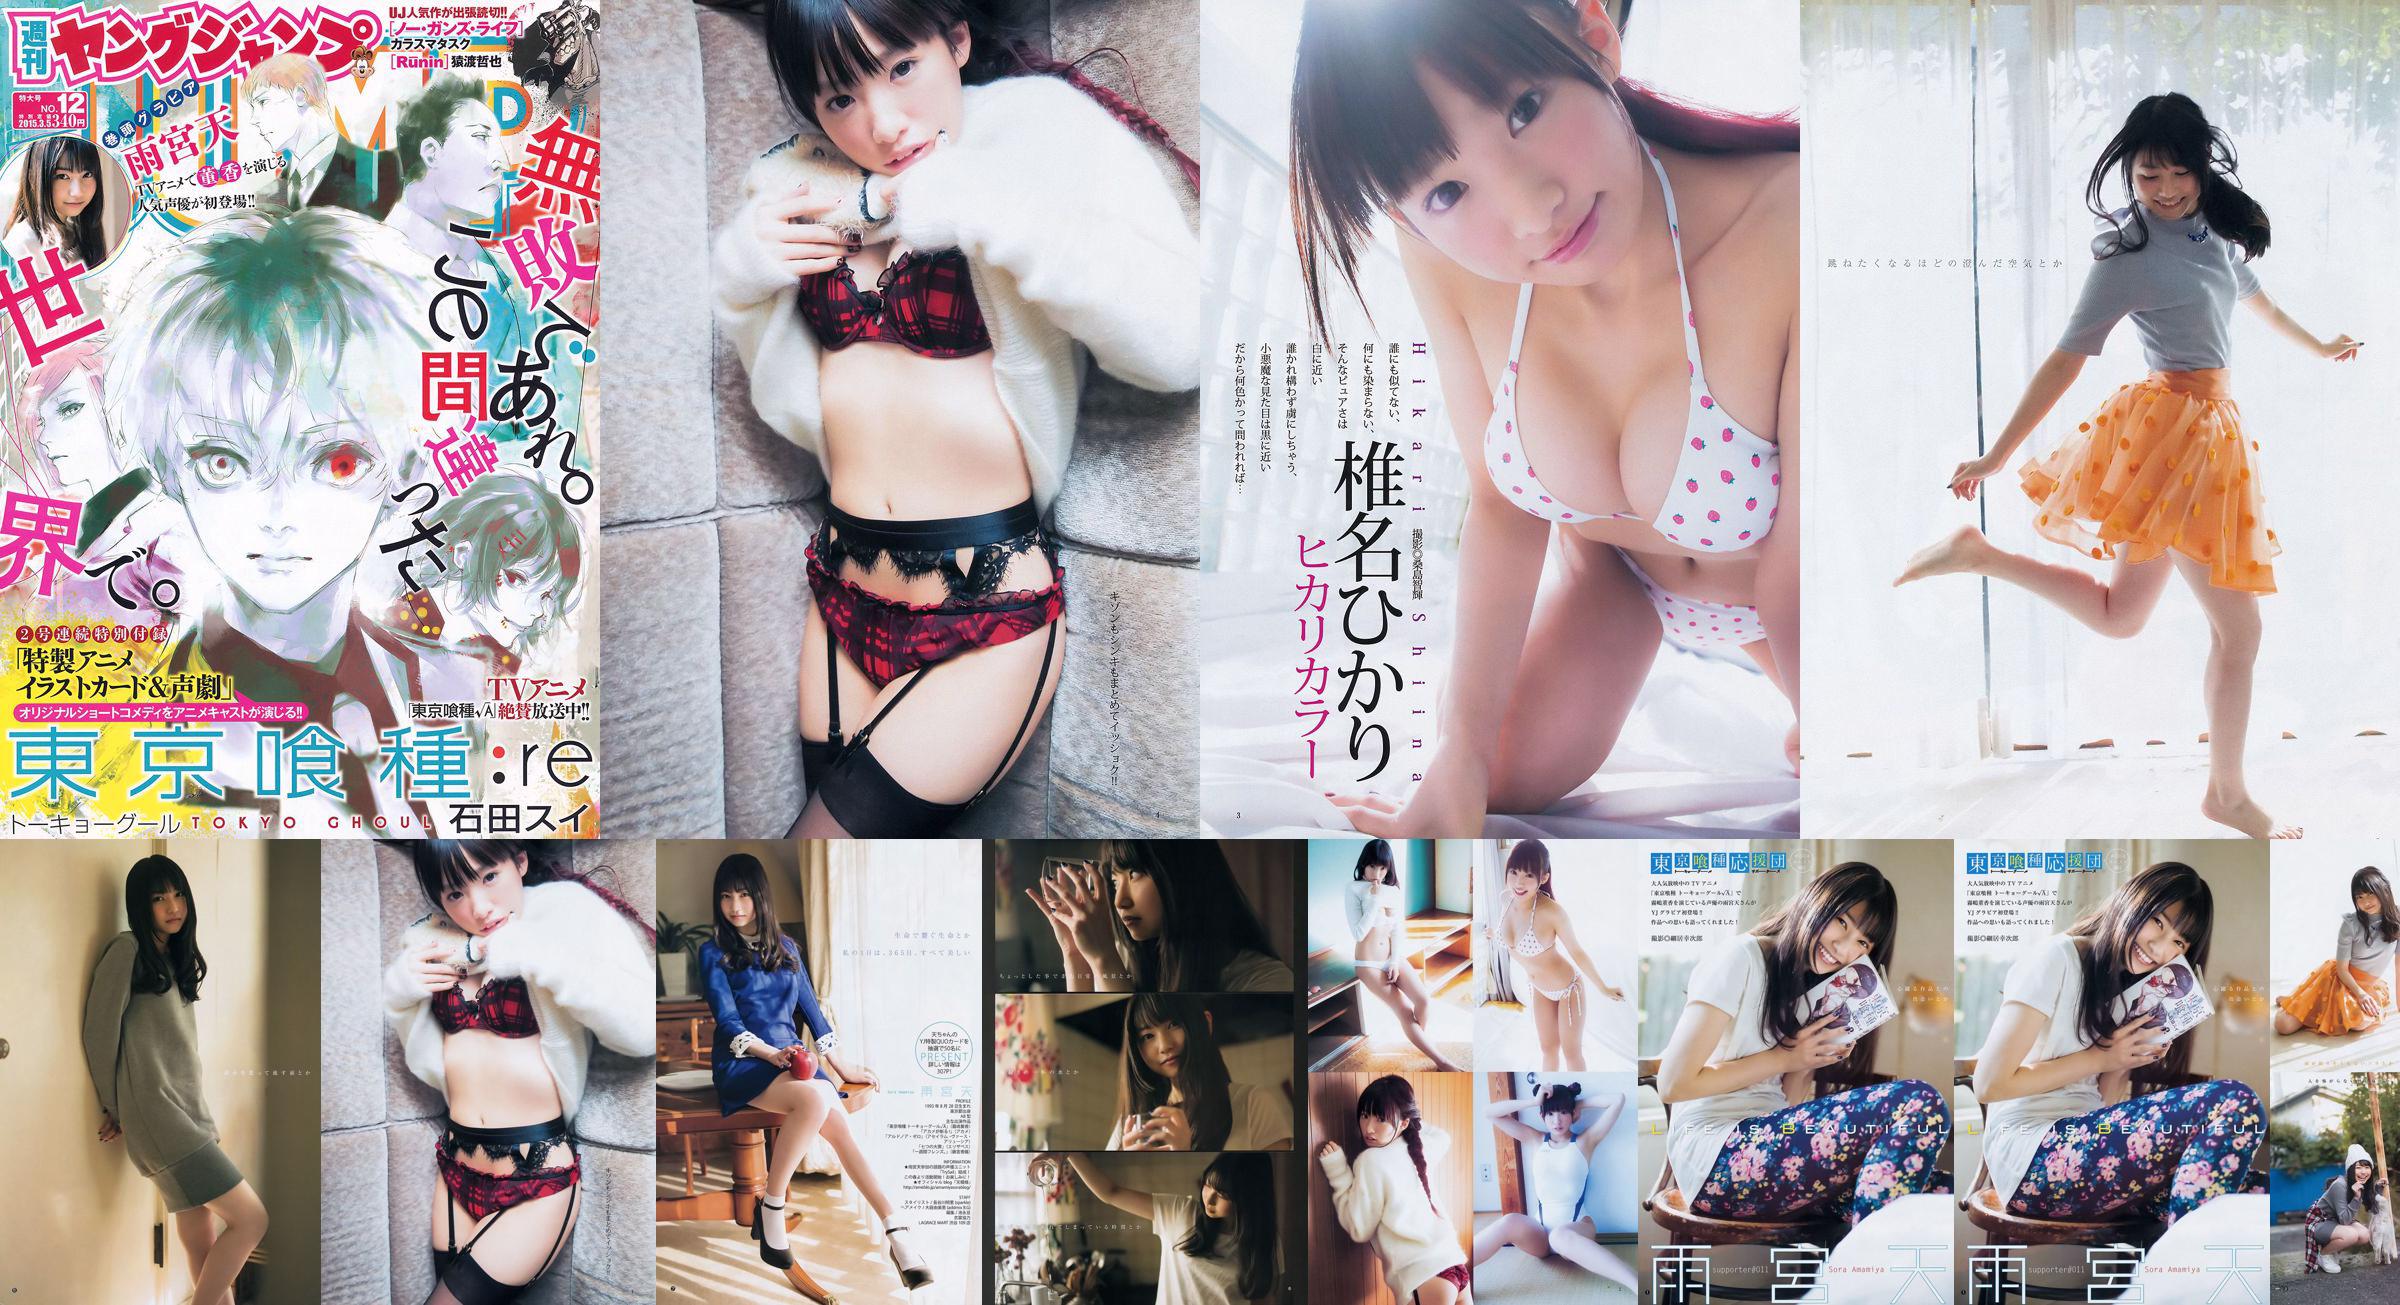 Amamiya Tian Shiina ひかり [Weekly Young Jump] 2015 No.12 Photo Magazine No.487ebe Page 1